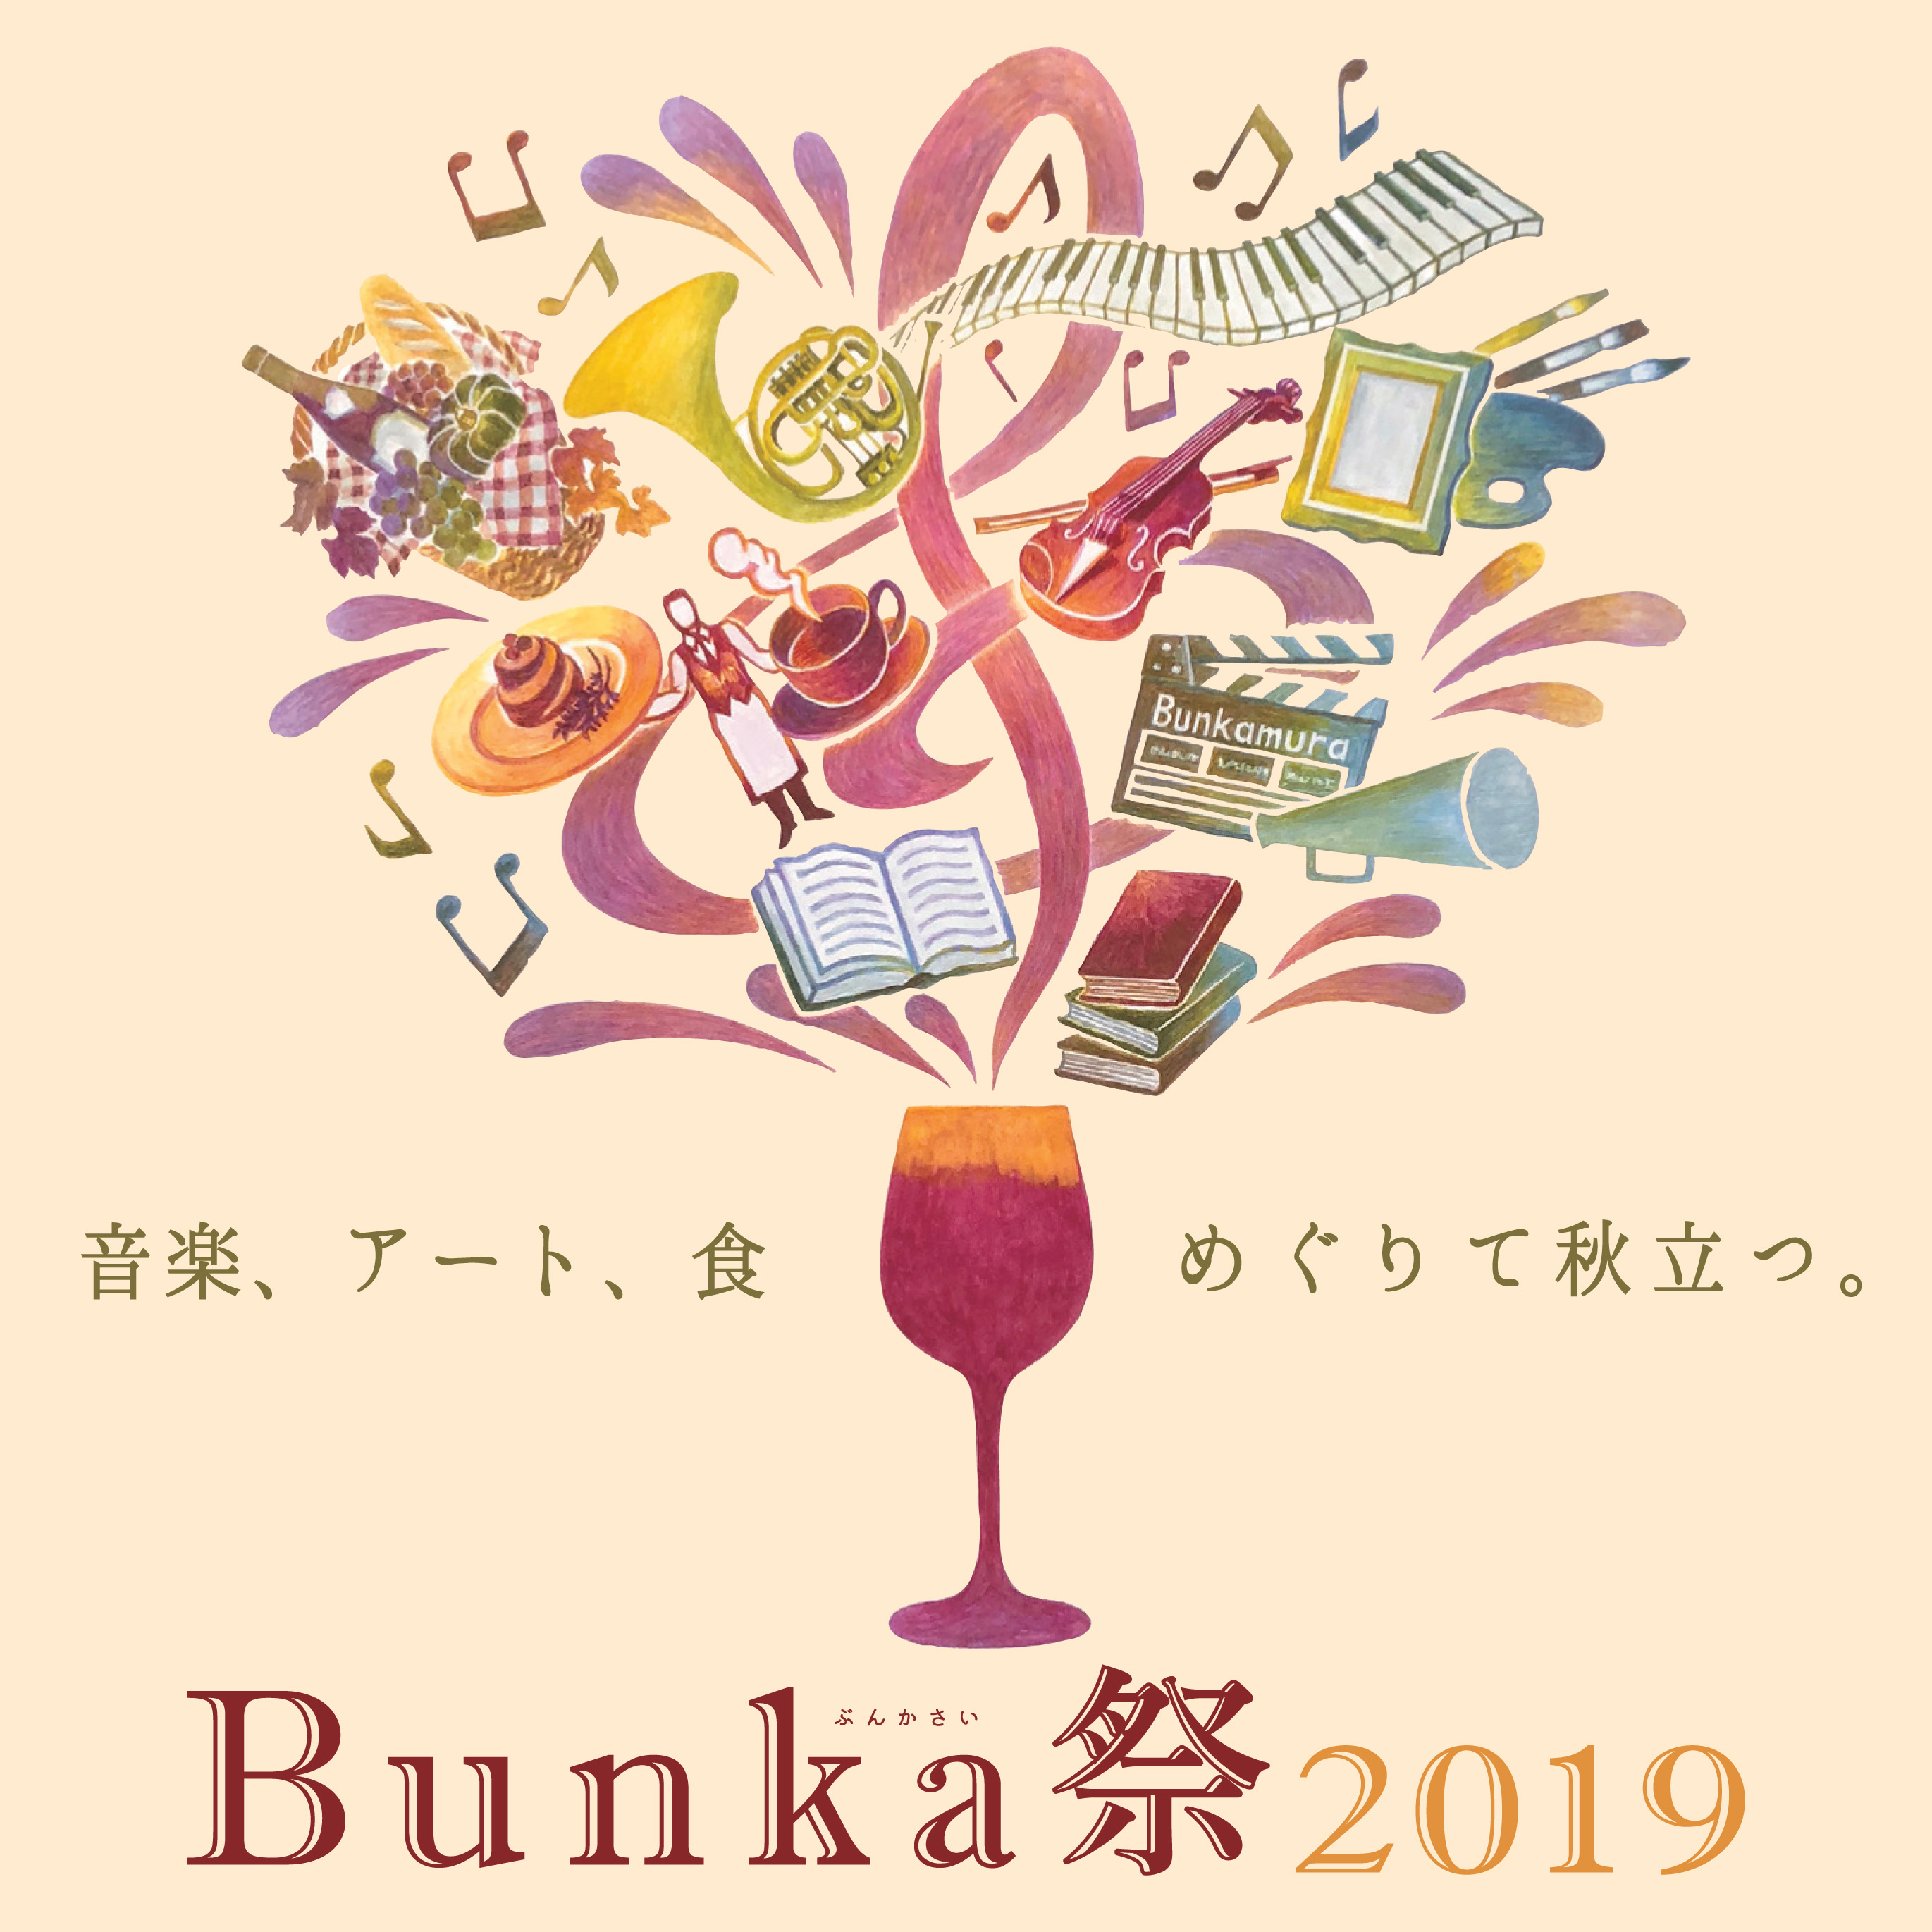 大人のための文化祭 Bunka祭 ぶんかさい 19 にantenna アンテナ がメディアパートナーとして協力 株式会社グライダーアソシエイツのプレスリリース